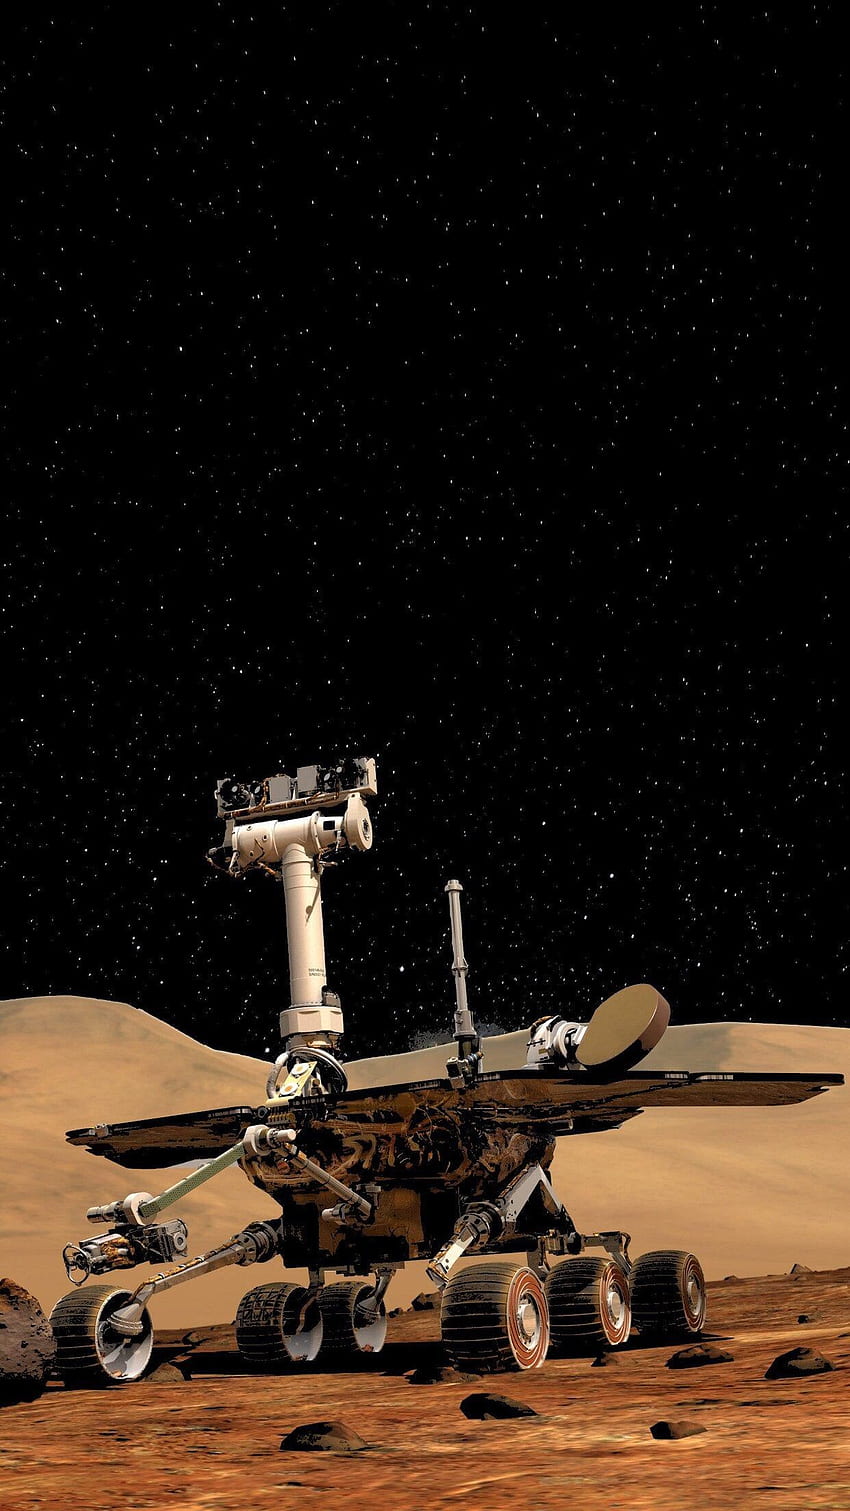 J'ai fabriqué un téléphone Oledified Opportunity Mars Rover, Curiosity Rover Fond d'écran de téléphone HD